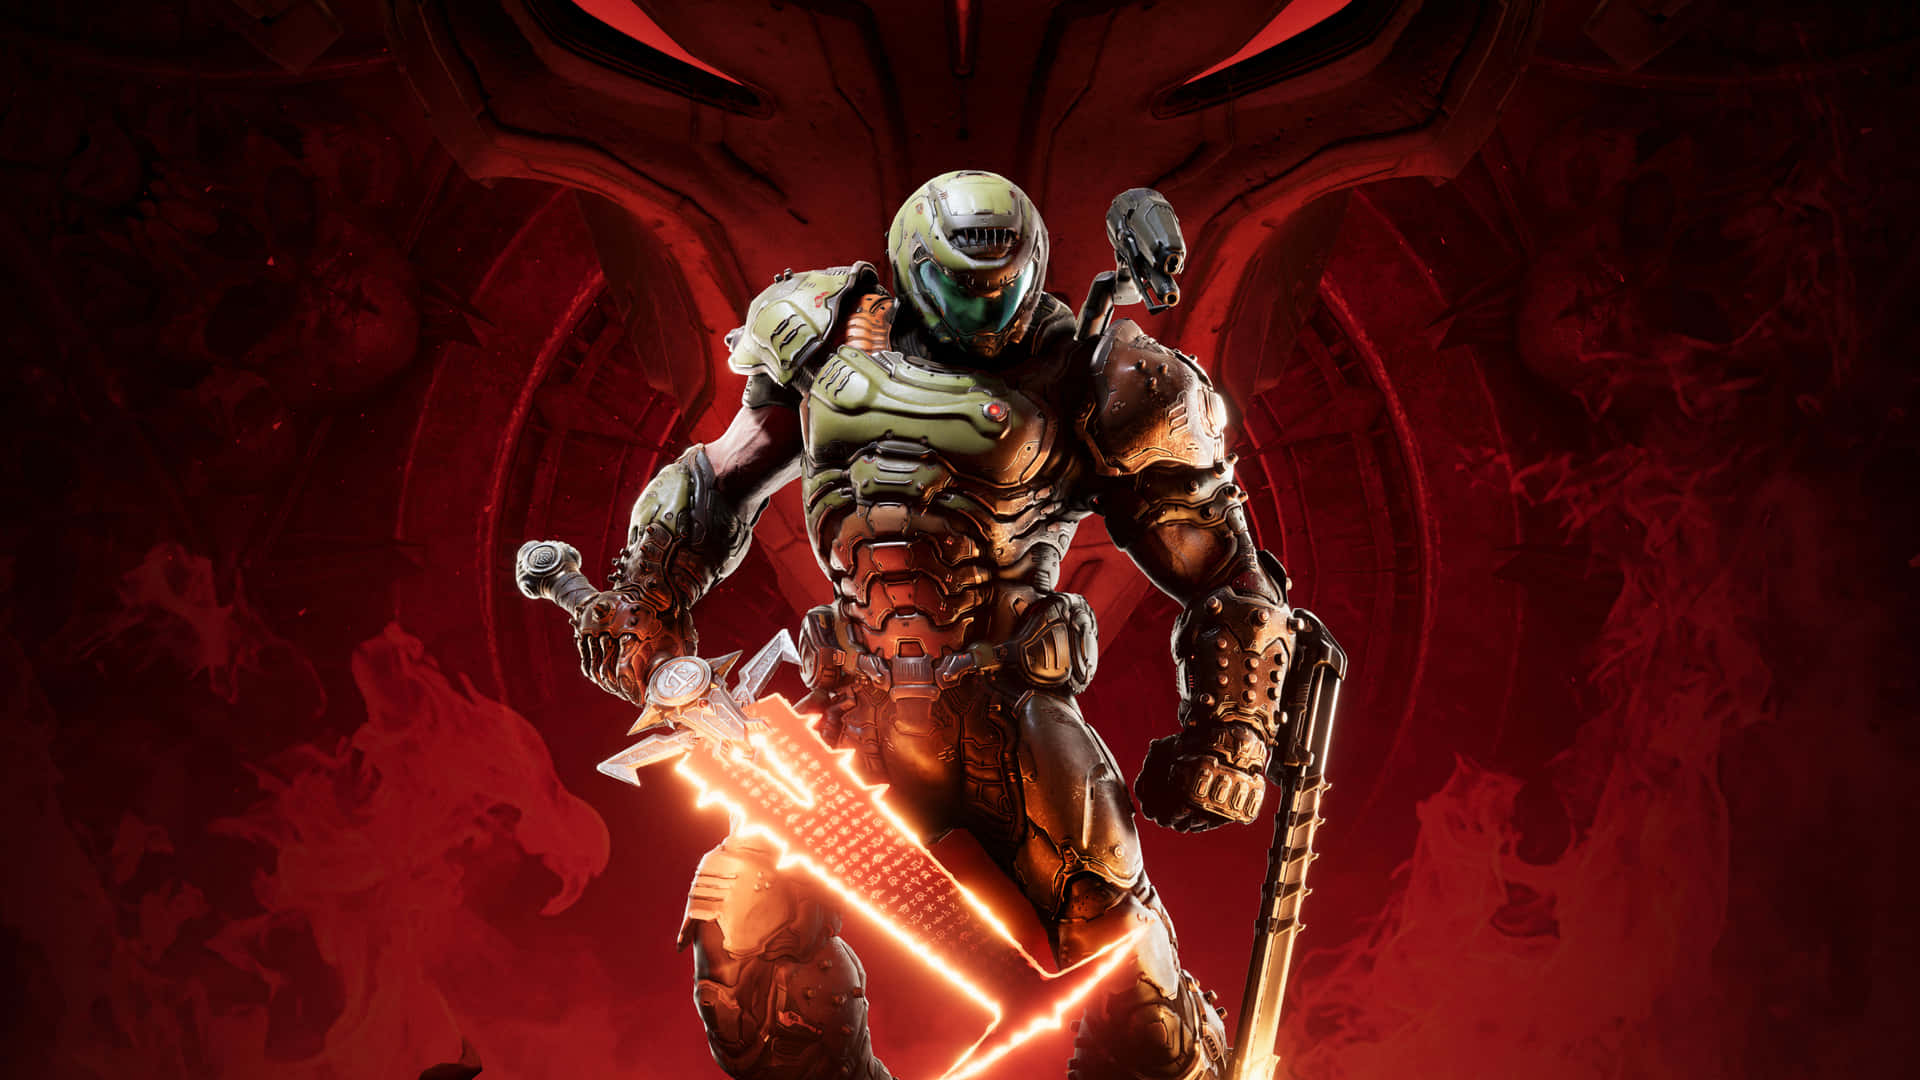 1440p Doom Background Red Sword